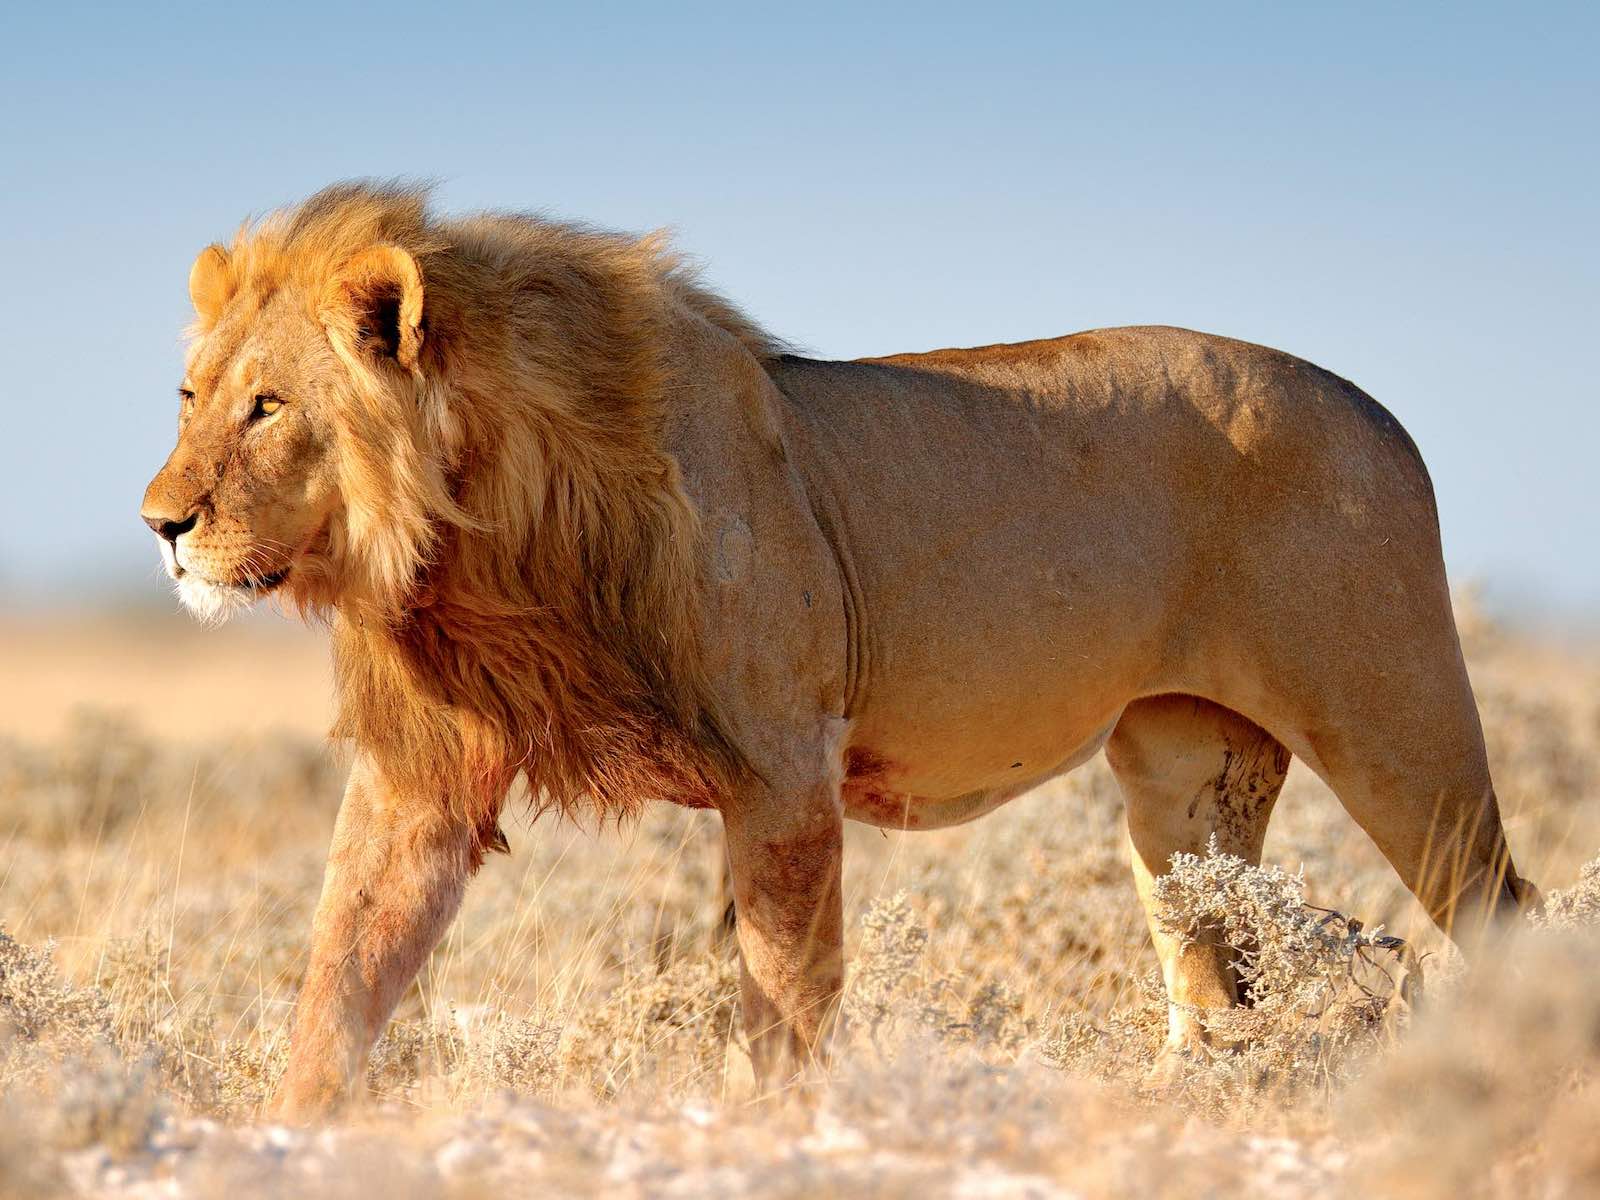 A magnificient male lion against a blue sky.